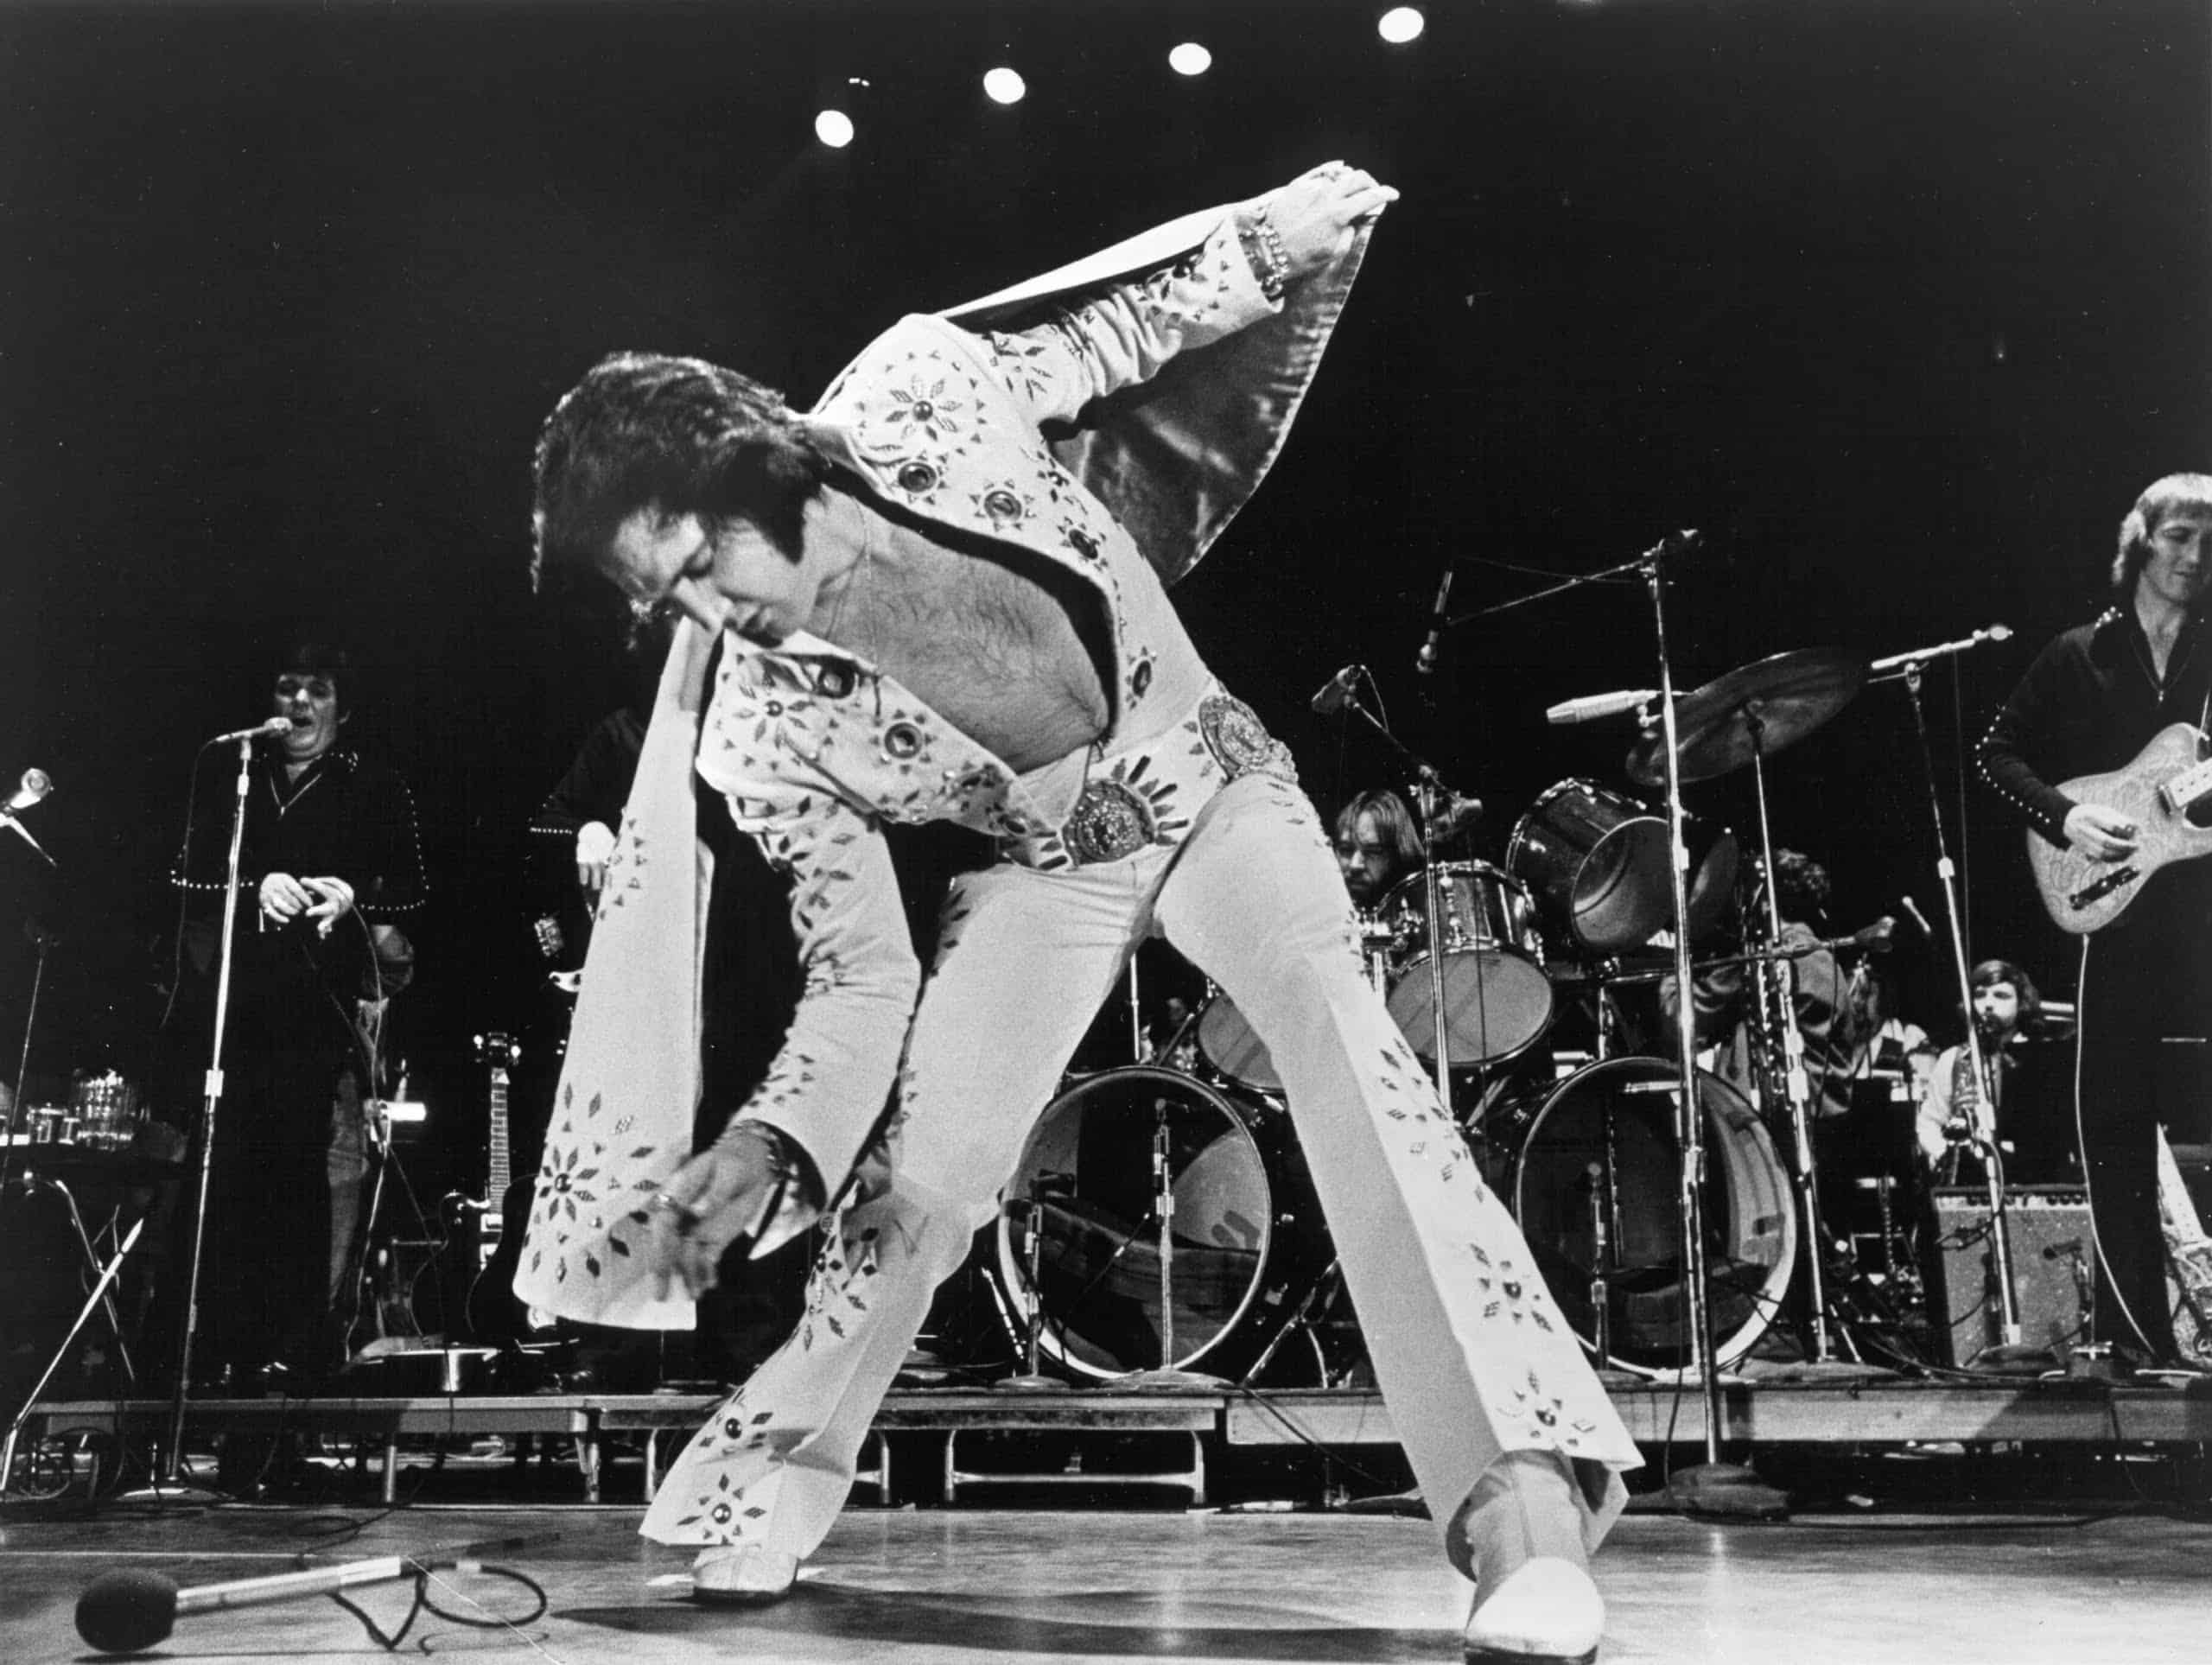 Elvis Presley Men's Rock N' Roll Crew Socks